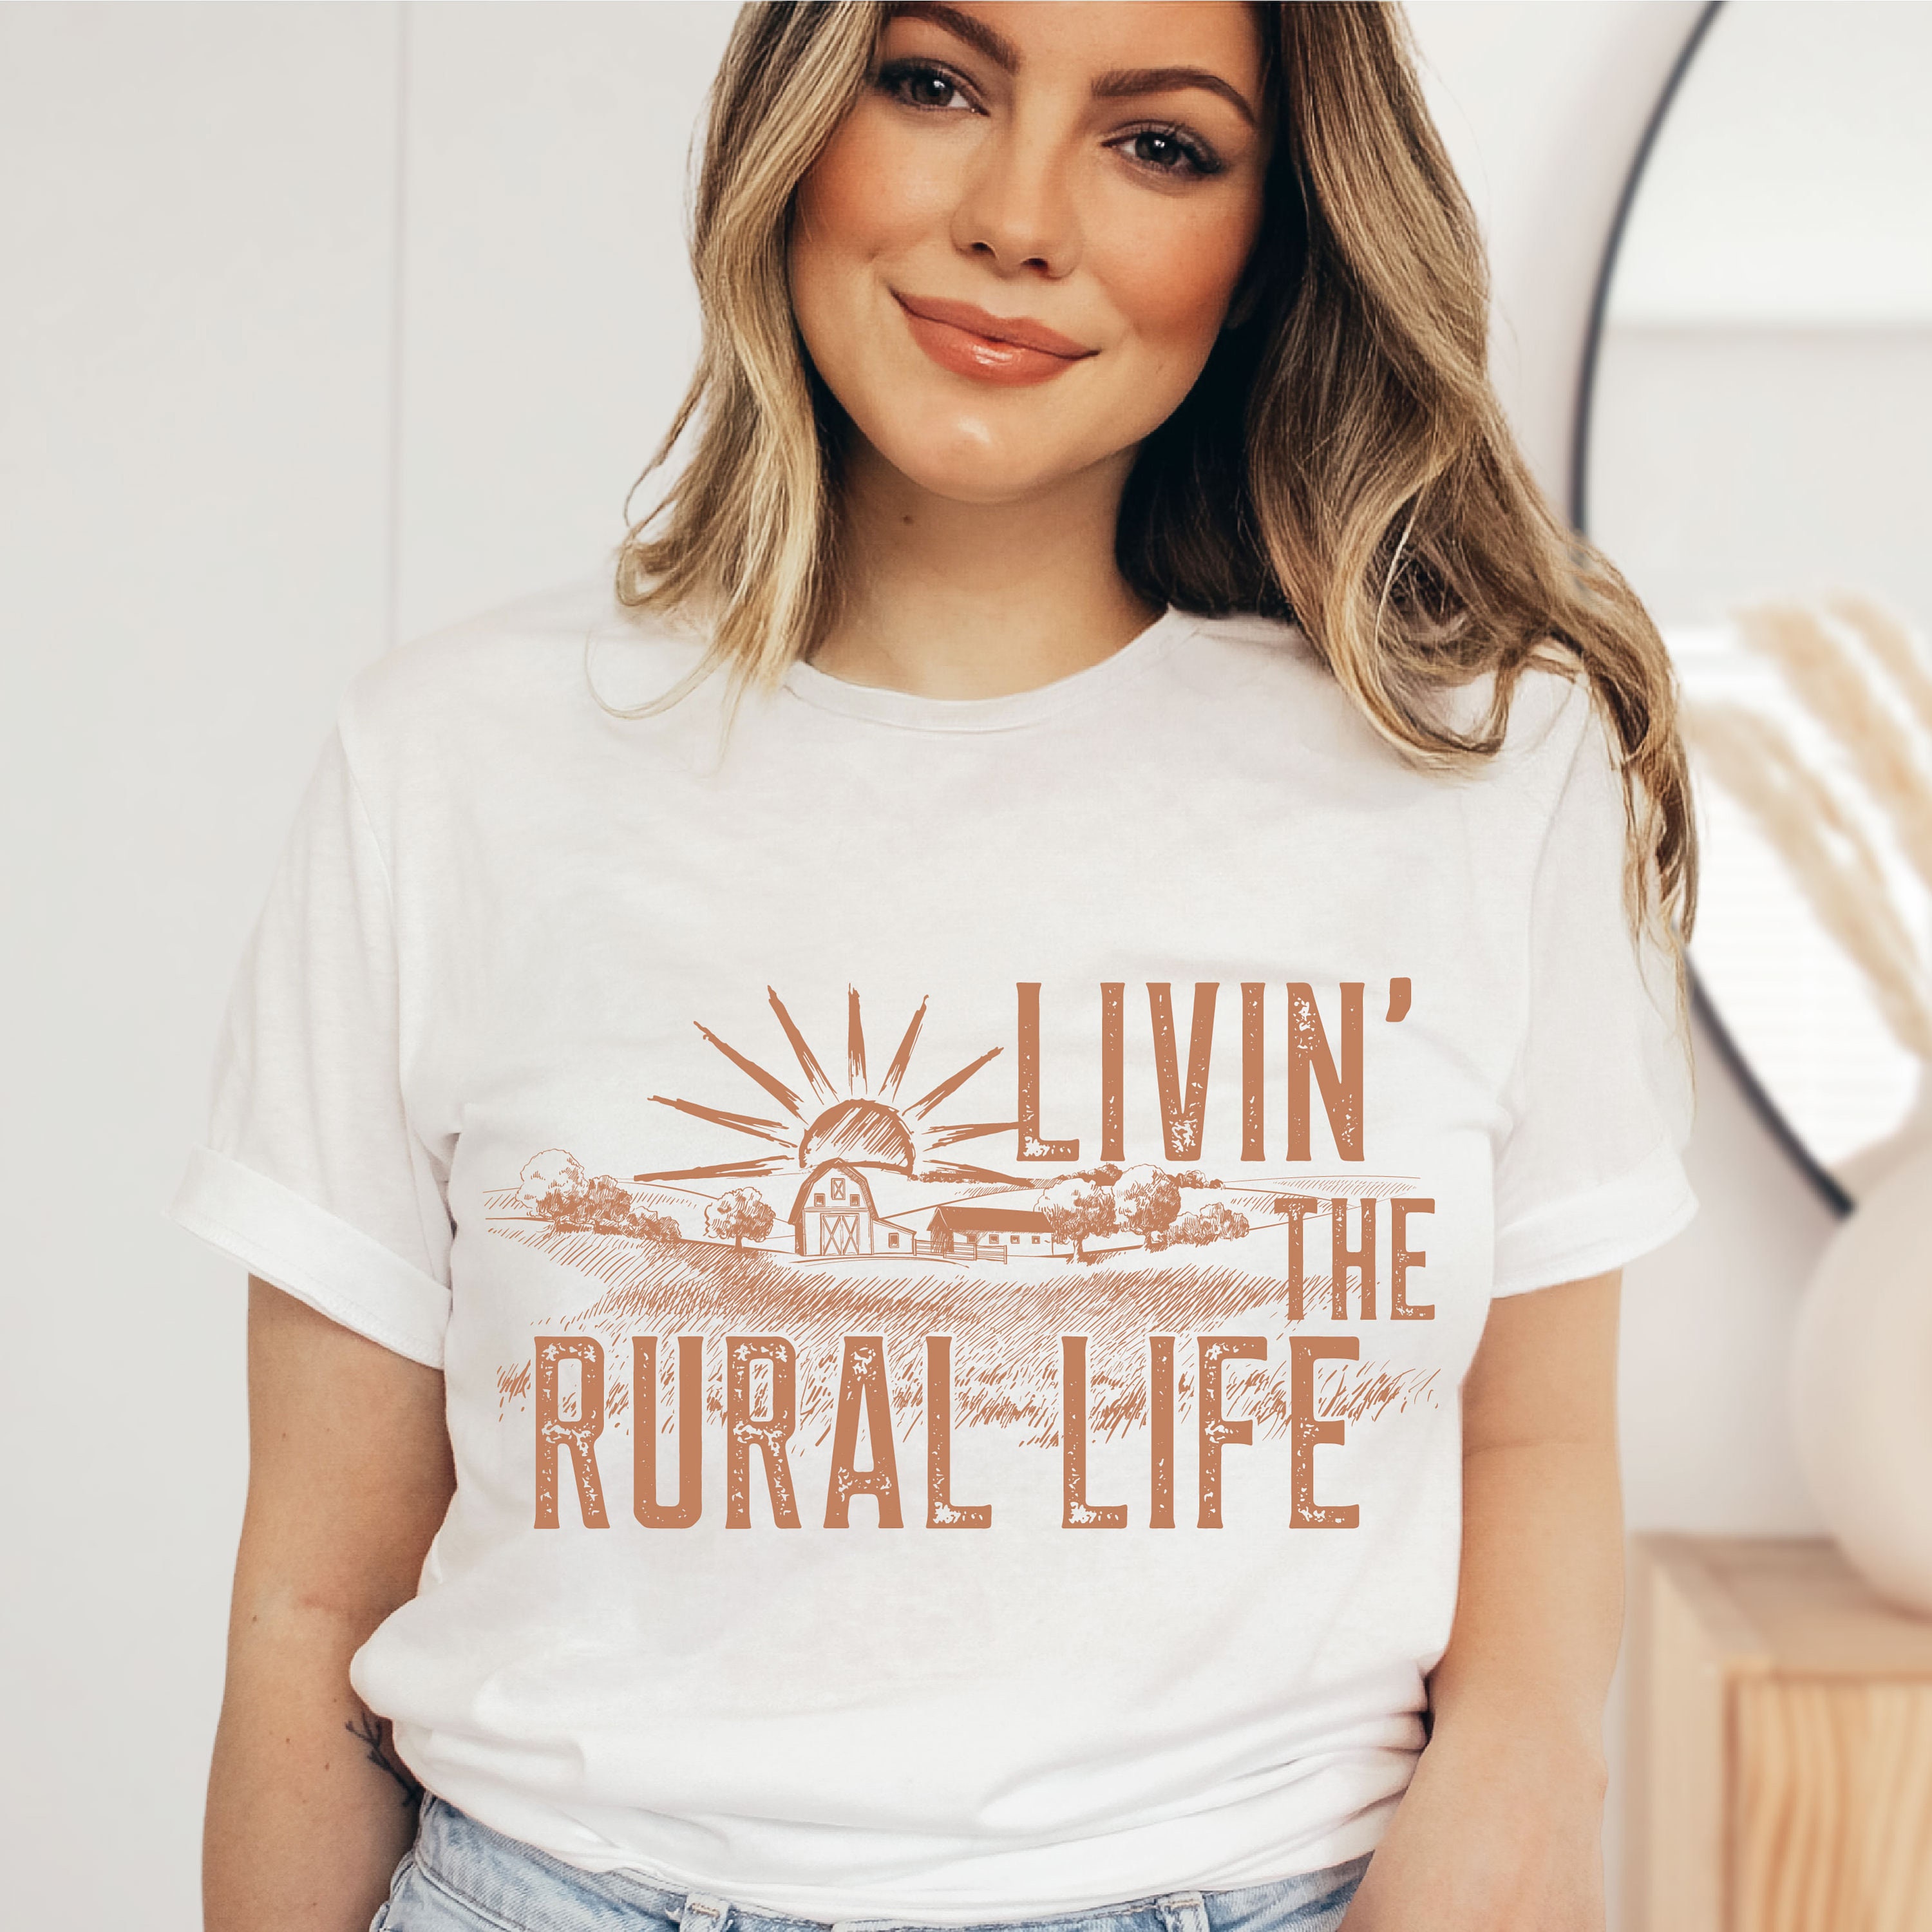 Livin' That Rural Life PNG File Sublimation Design - Etsy